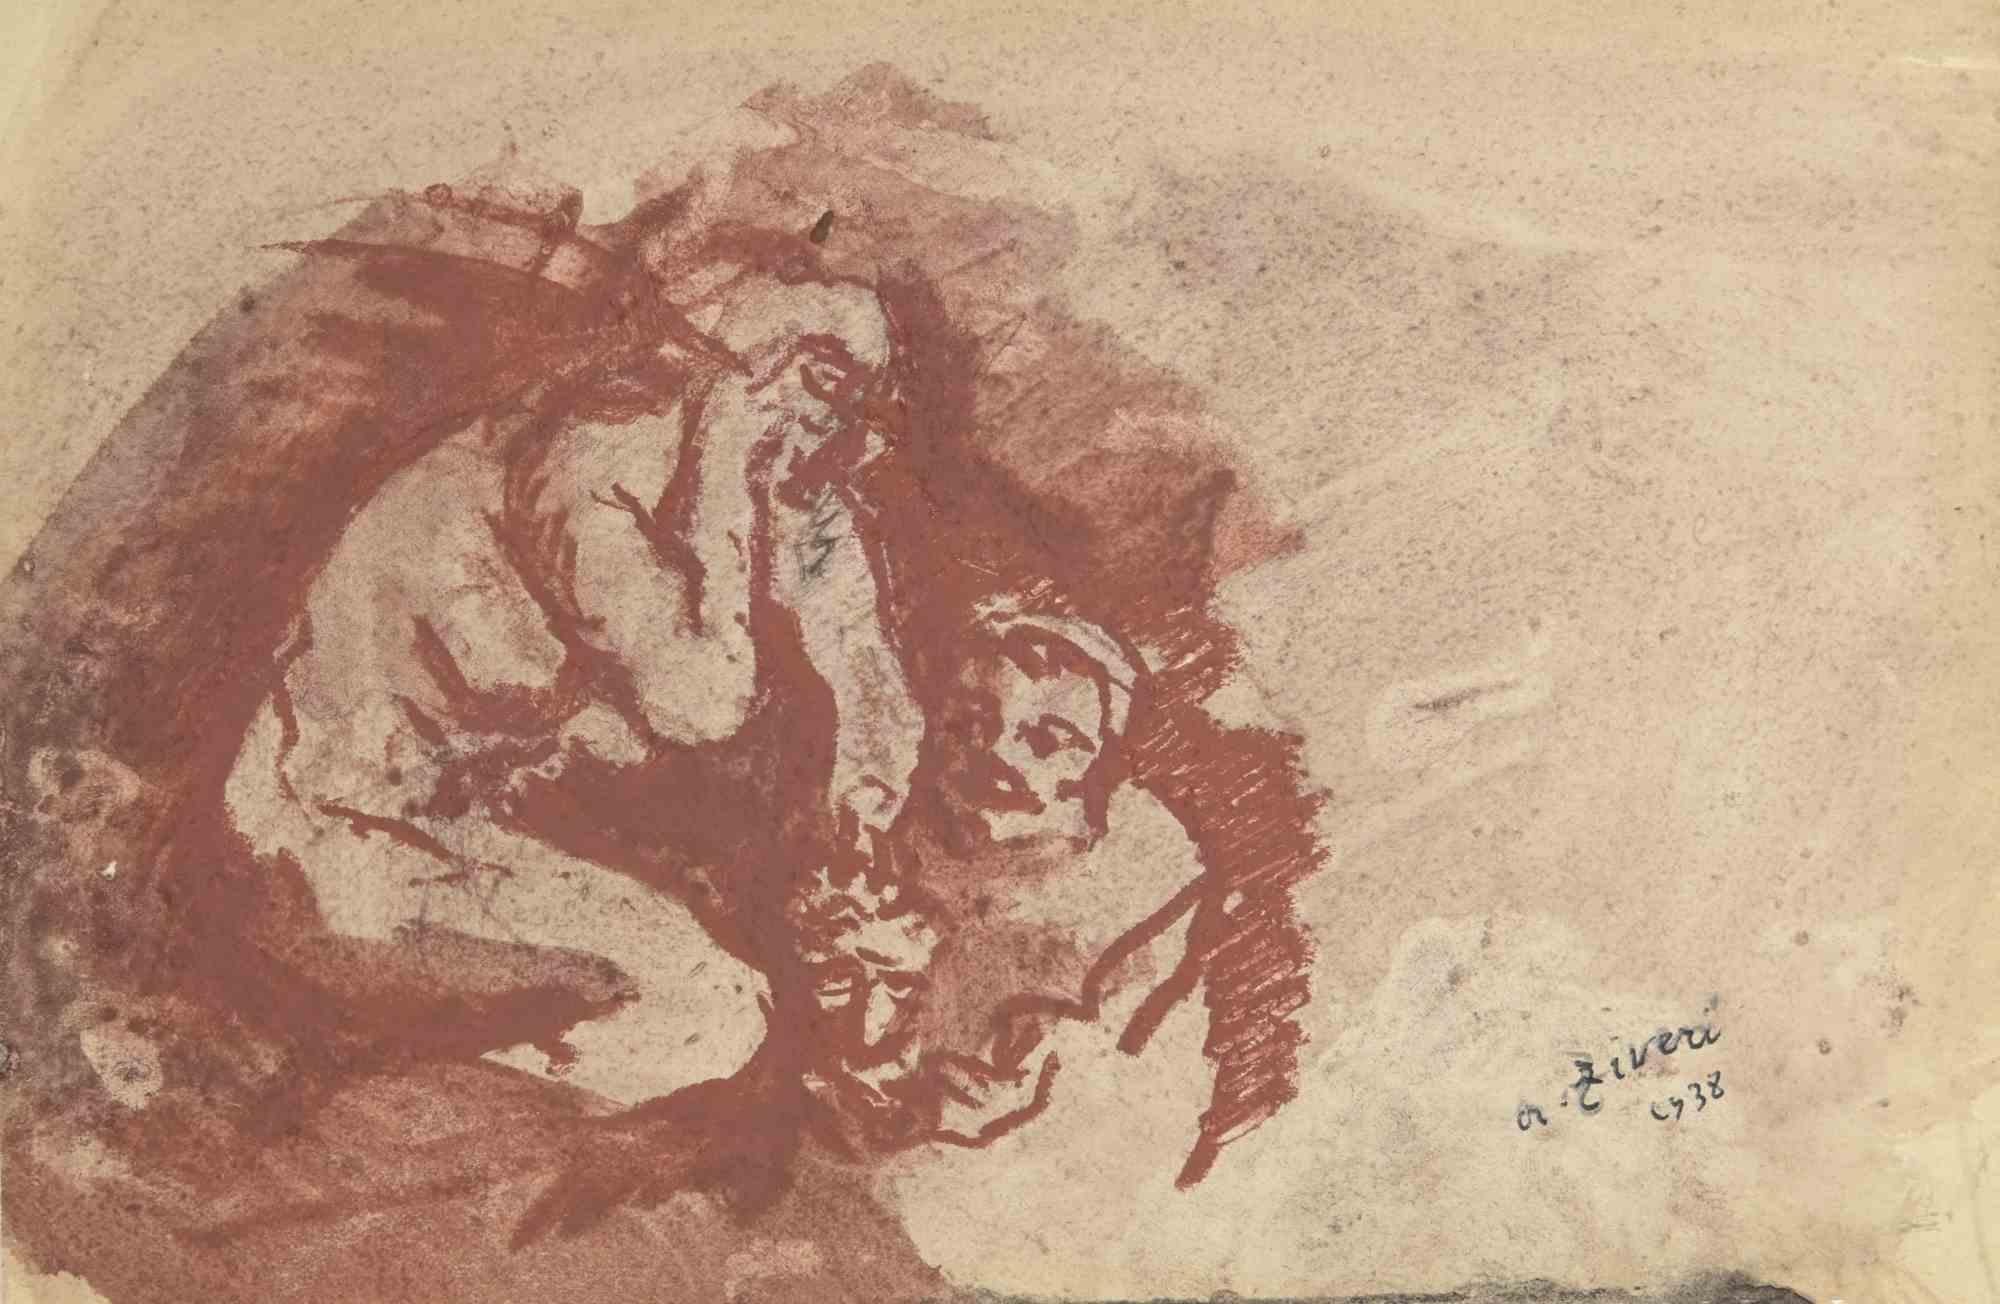 Das Liebespaar ist eine Zeichnung von Alberto Ziveri aus dem Jahr 1938.

Aquarell auf Papier.

Handsigniert und datiert.

In gutem Zustand mit leichten Stockflecken.

Das Kunstwerk wird durch geschickte Striche meisterhaft dargestellt.

Alberto